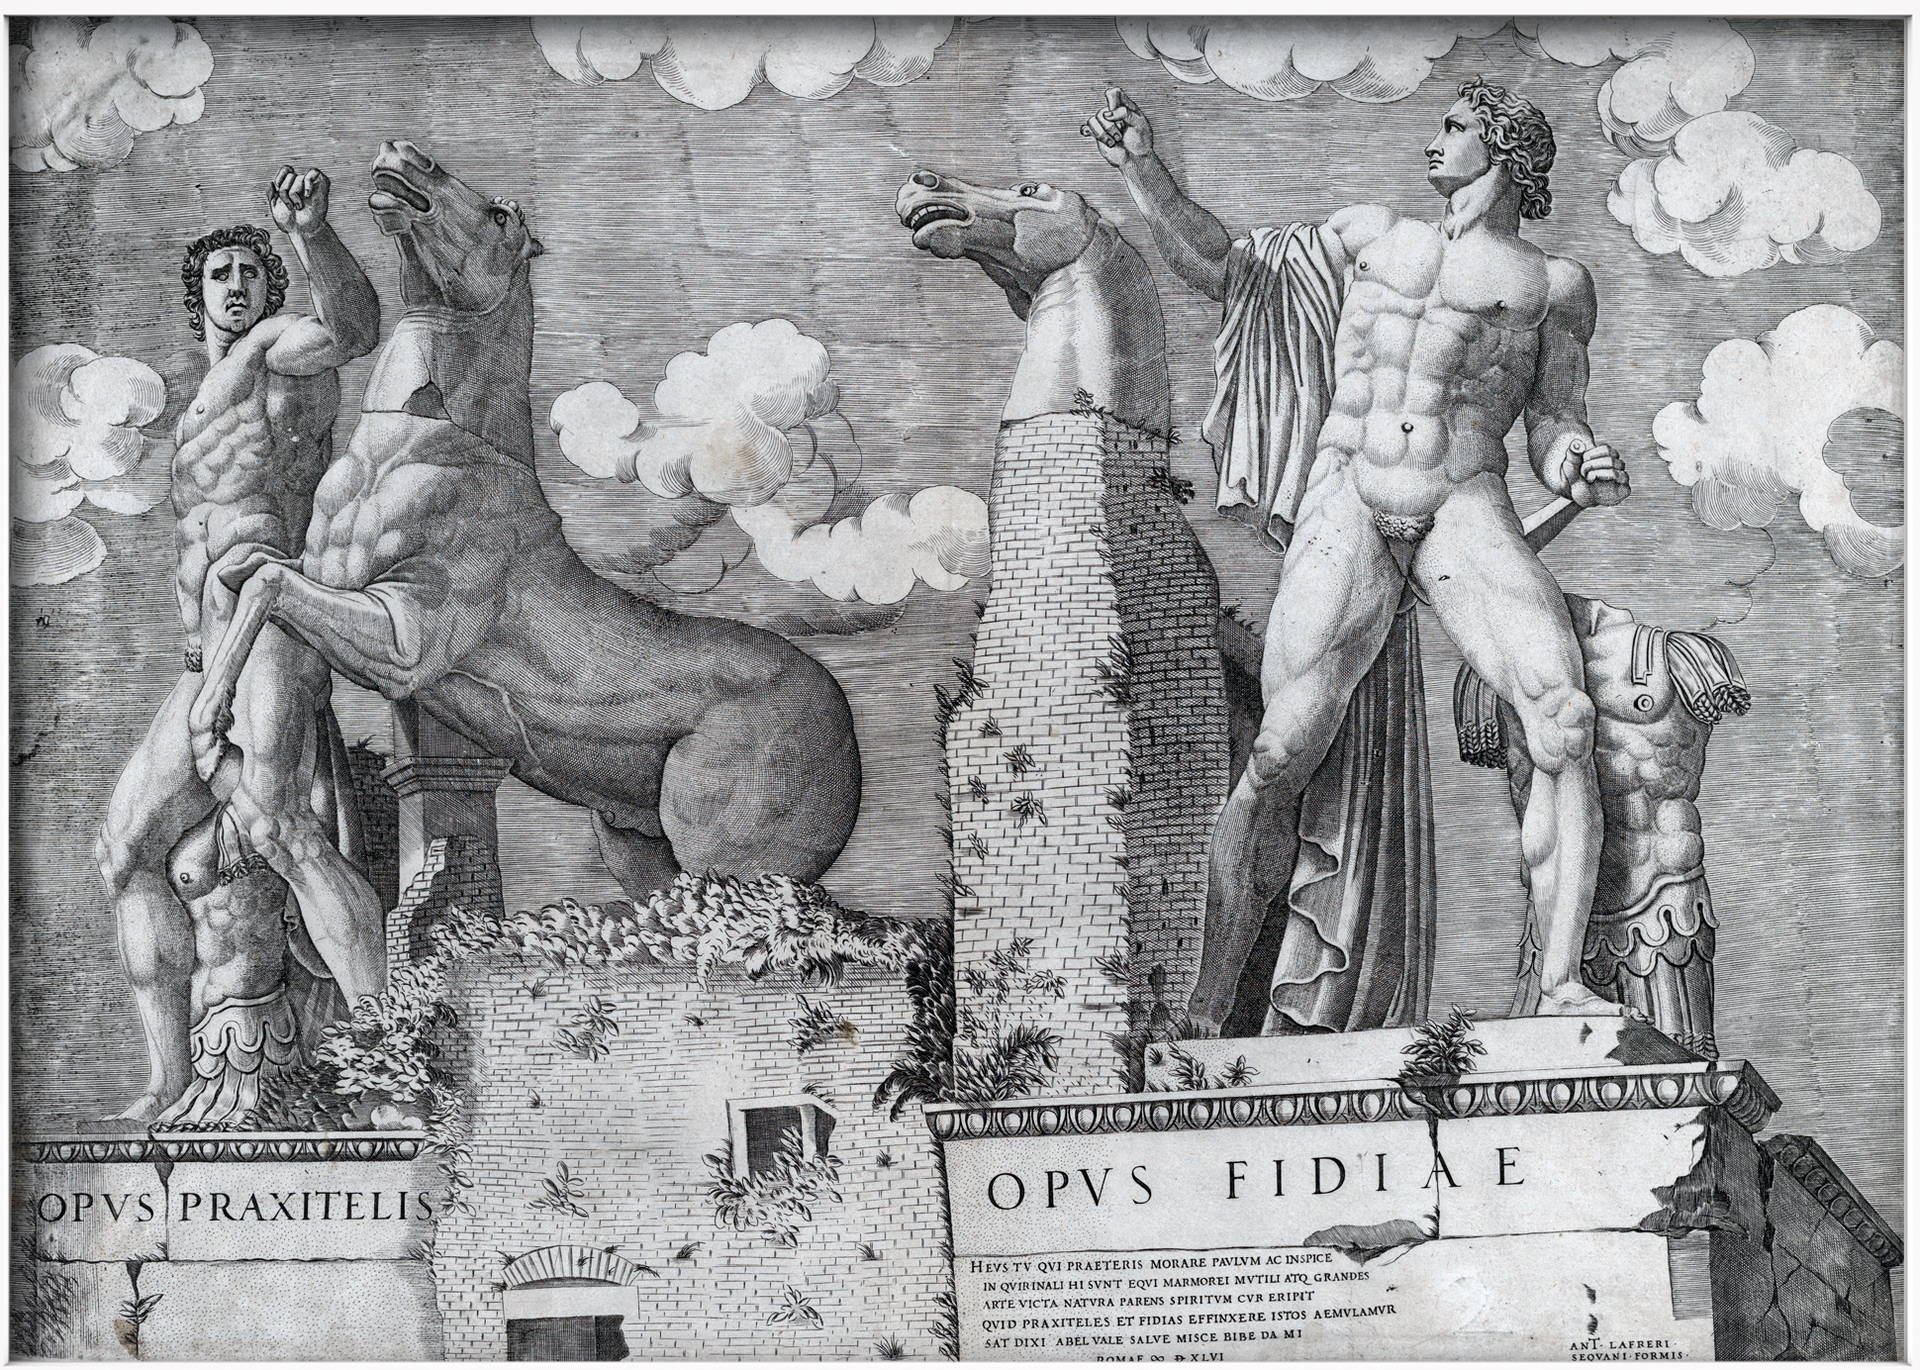 Ilustracja przedstawia obraz „Speculum Romanae Magnificentiae” autora nieznanego. Obraz ukazuje dwa posągi Dioskurów na Kwirynale. Posągi umieszczone są na budynku. Posąg po prawej stronie przedstawia nagiego młodego mężczyznę, który w złości unosi prawą pięść do góry. Obok postaci widoczny jest murek, na którym stoi posąg głowy konia. Z lewej strony działa również widoczny jest nagi, młody, umięśniony mężczyzna. Obok postaci stoi koń z uniesionymi do góry kopytami. 